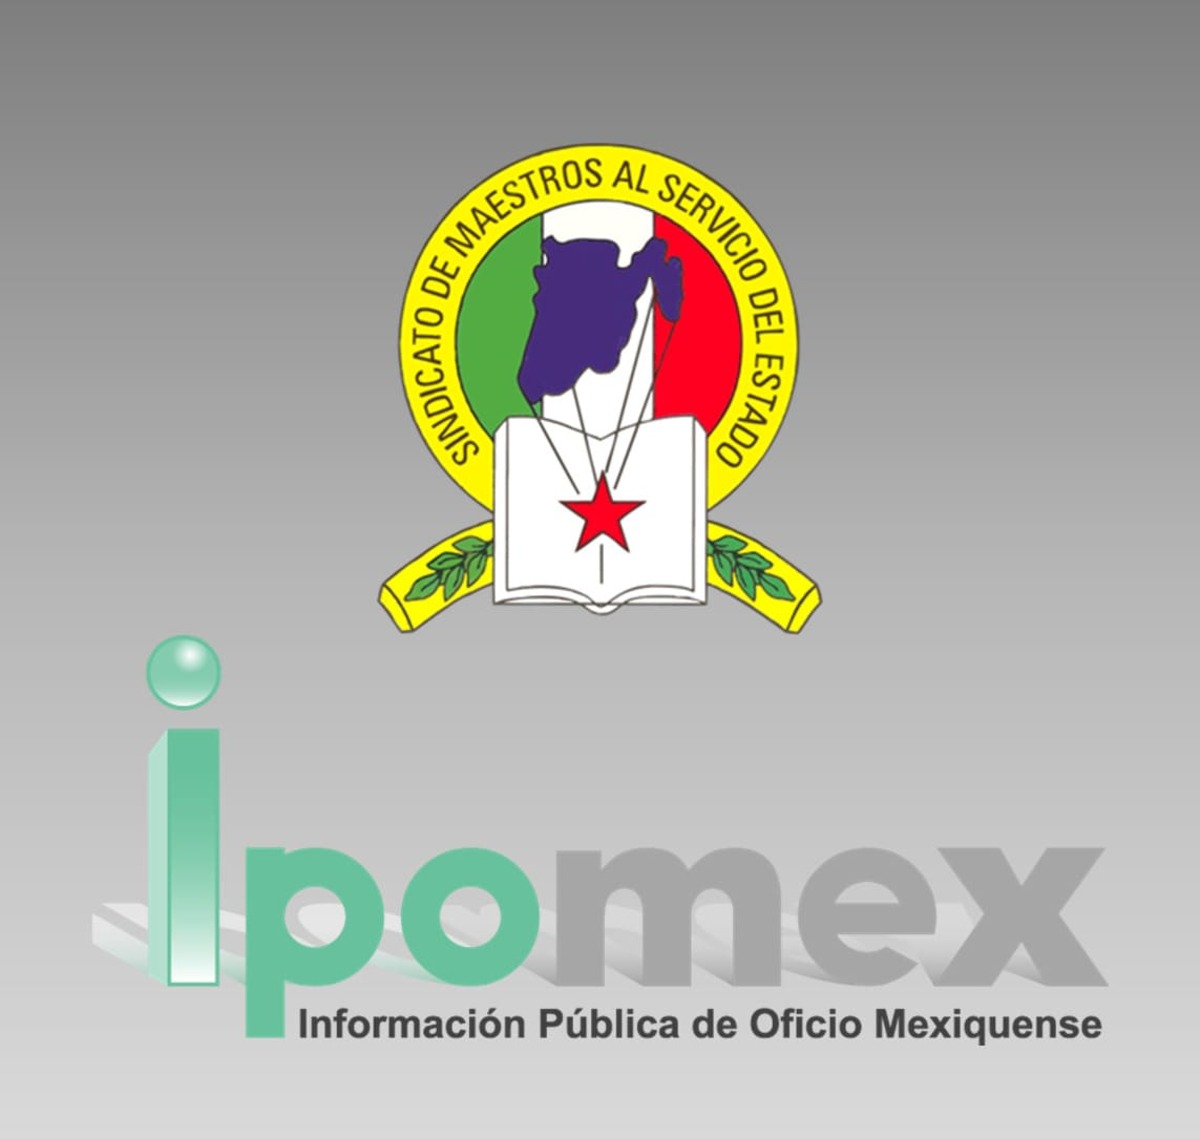 IPOMEX - Â¿QuÃ© es y como beneficia a MÃ©xico?